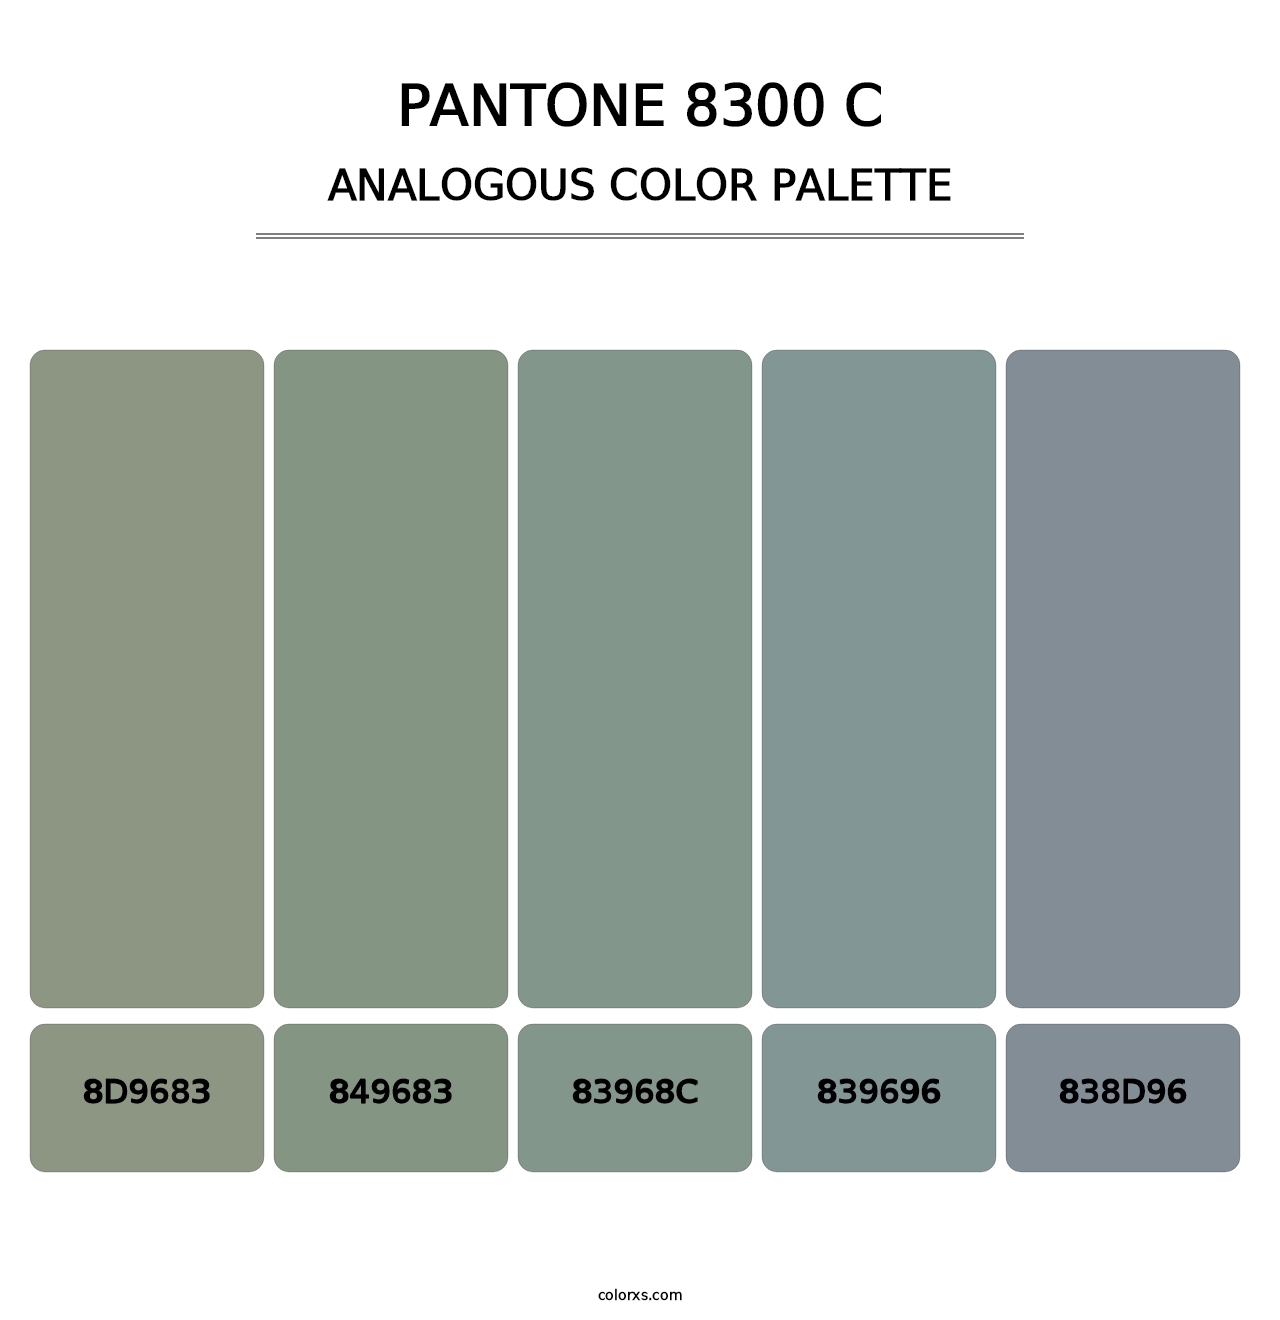 PANTONE 8300 C - Analogous Color Palette